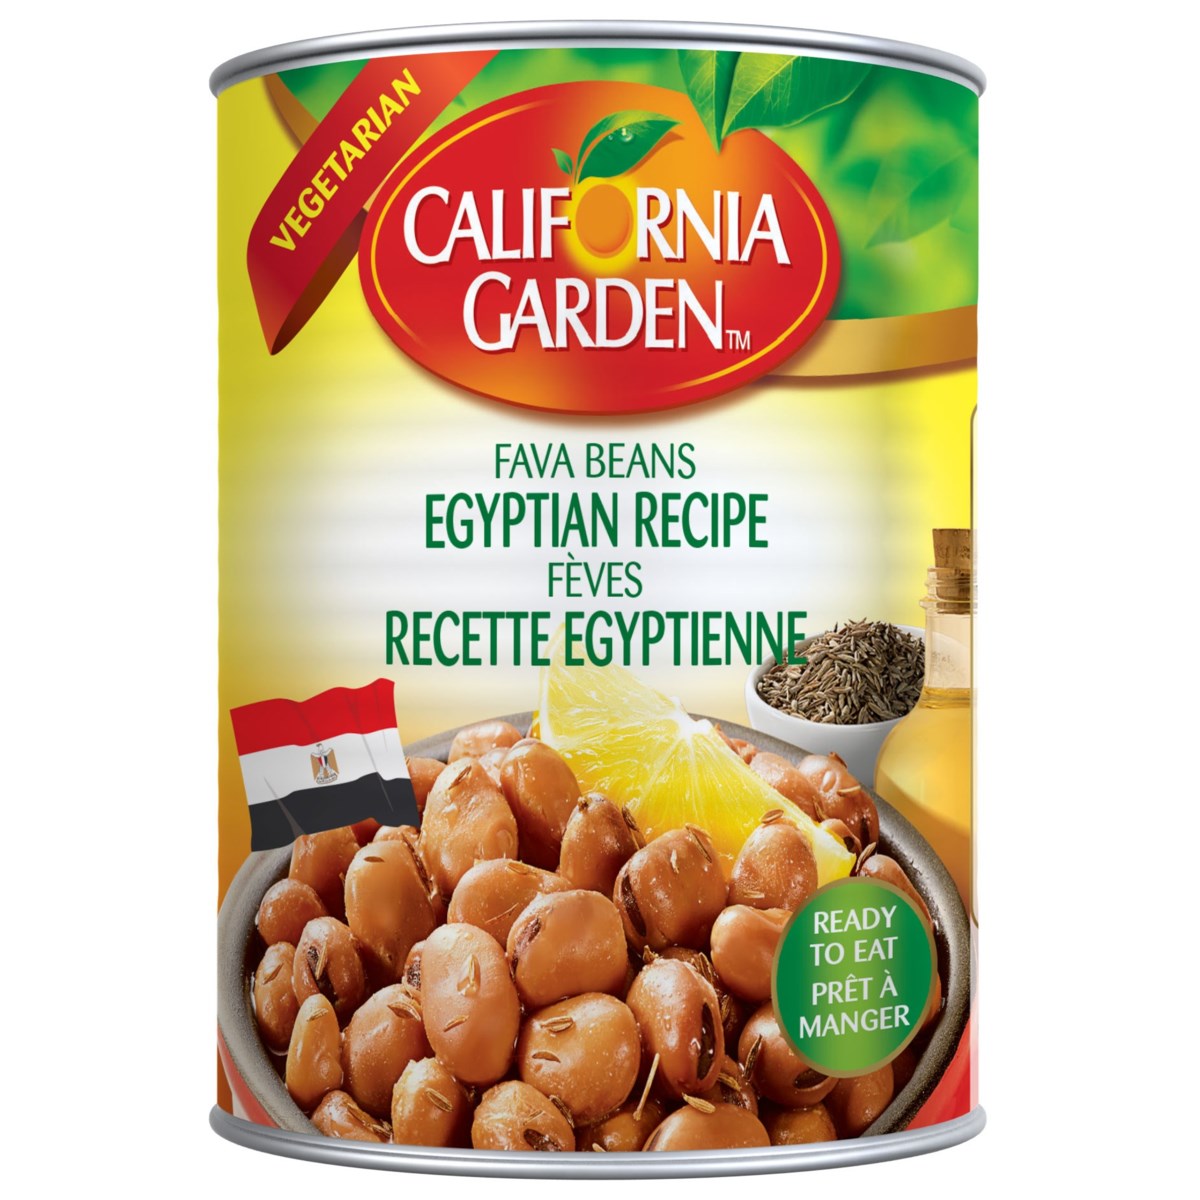 Fava Beans- Egyptian Recipe "CALIFORNIA GARDEN" 16